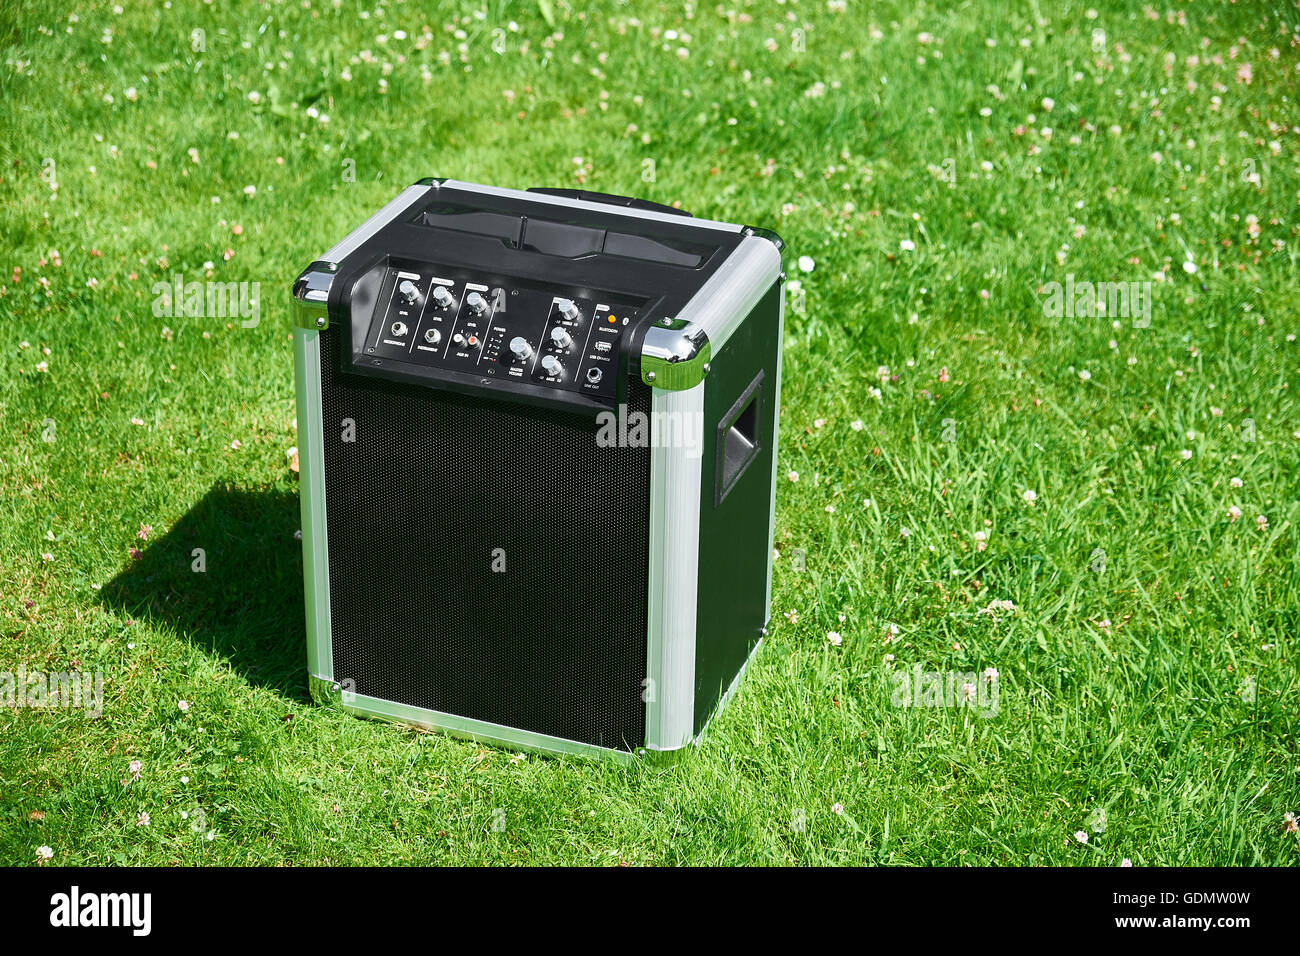 Schnurloses transportable Festival Musik-Player auf einem Rasen in einem park Stockfoto